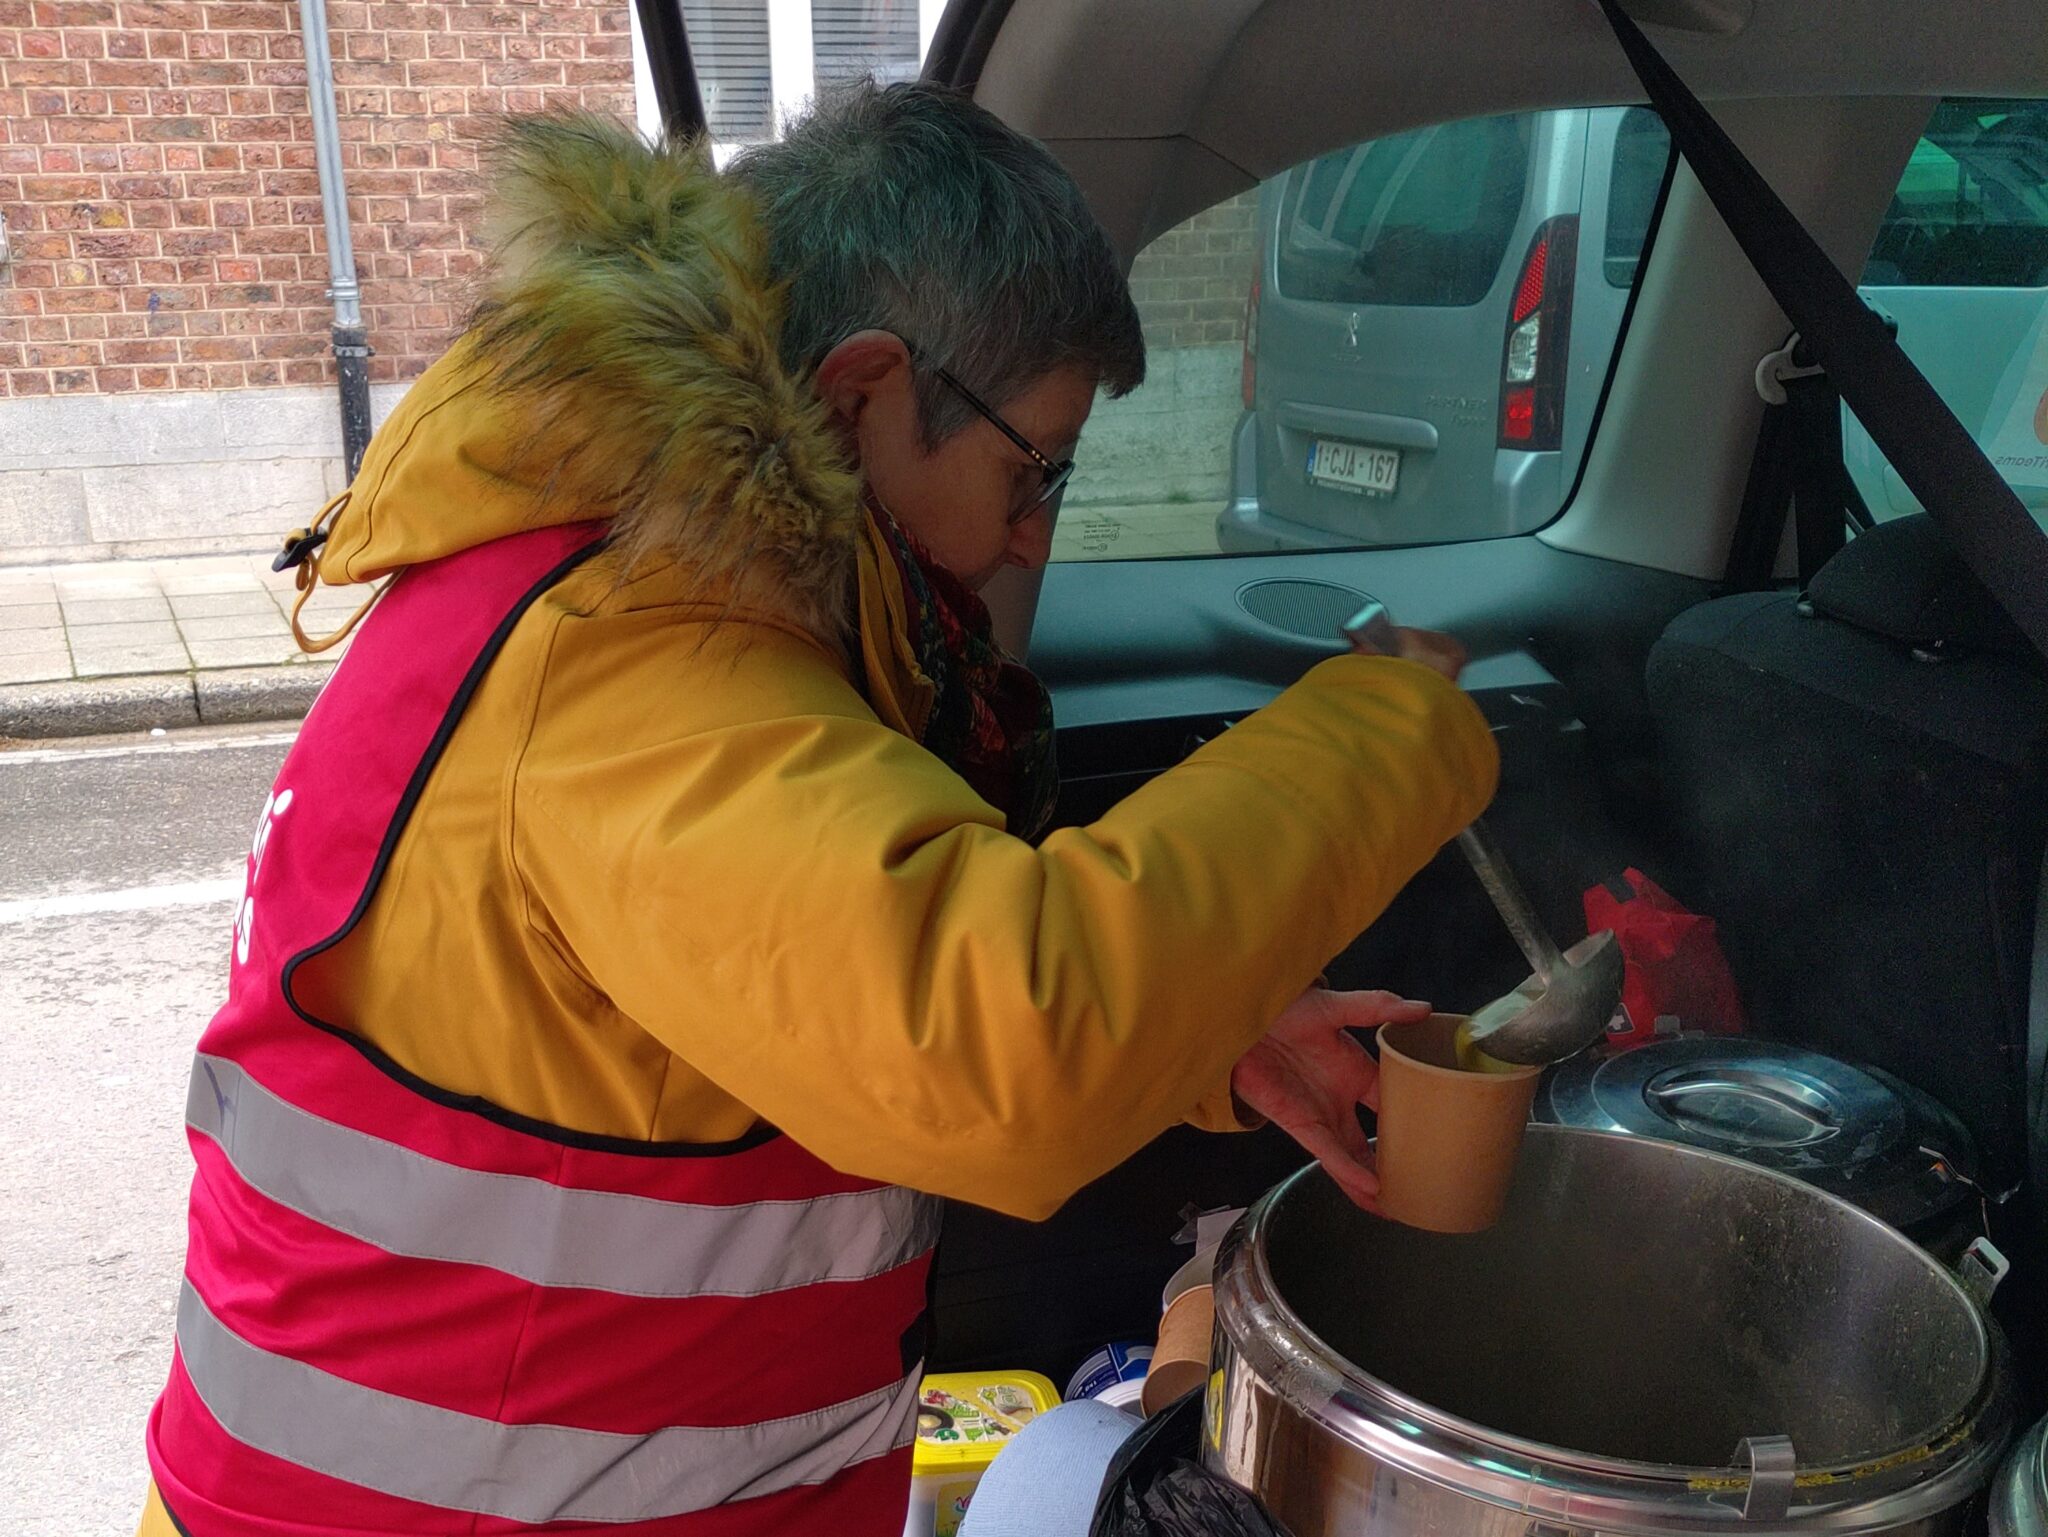 vrijwilliger met fluovestje aan schept soep uit in kofferbak van auto